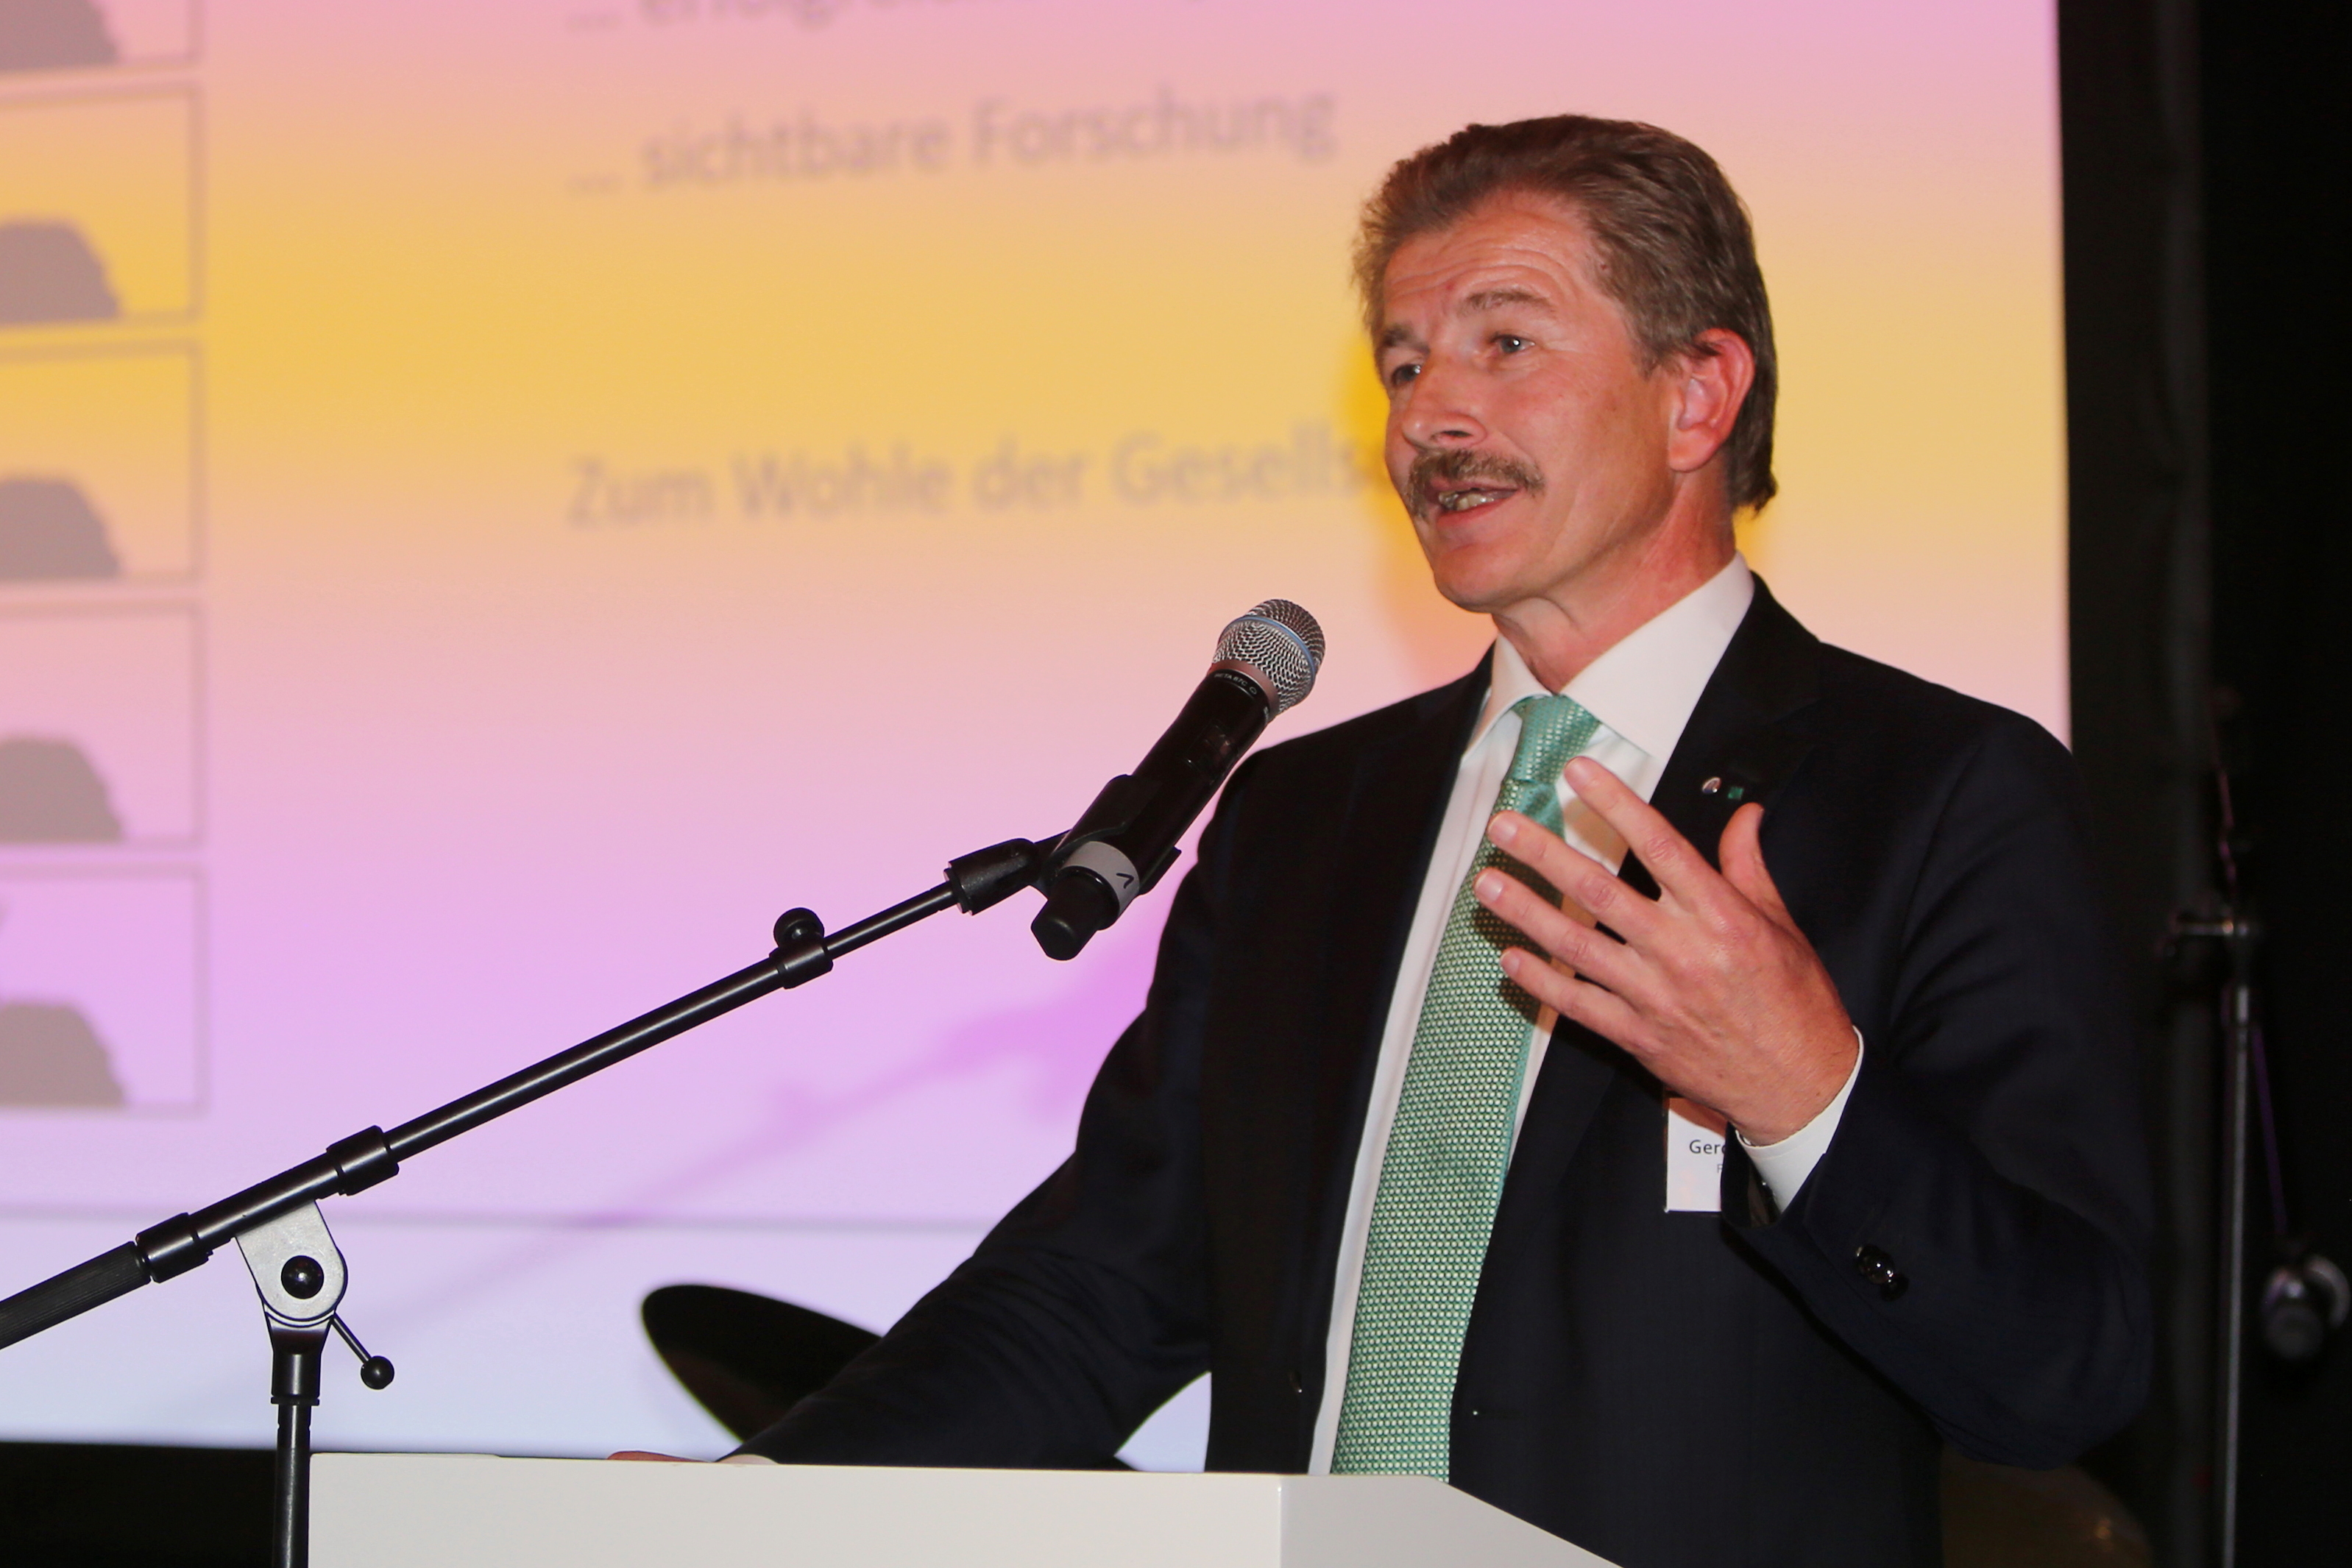 Begrüßung durch den geschäftsführenden Institutsleiter des Fraunhofer IME, Professor Gerd Geisslinger